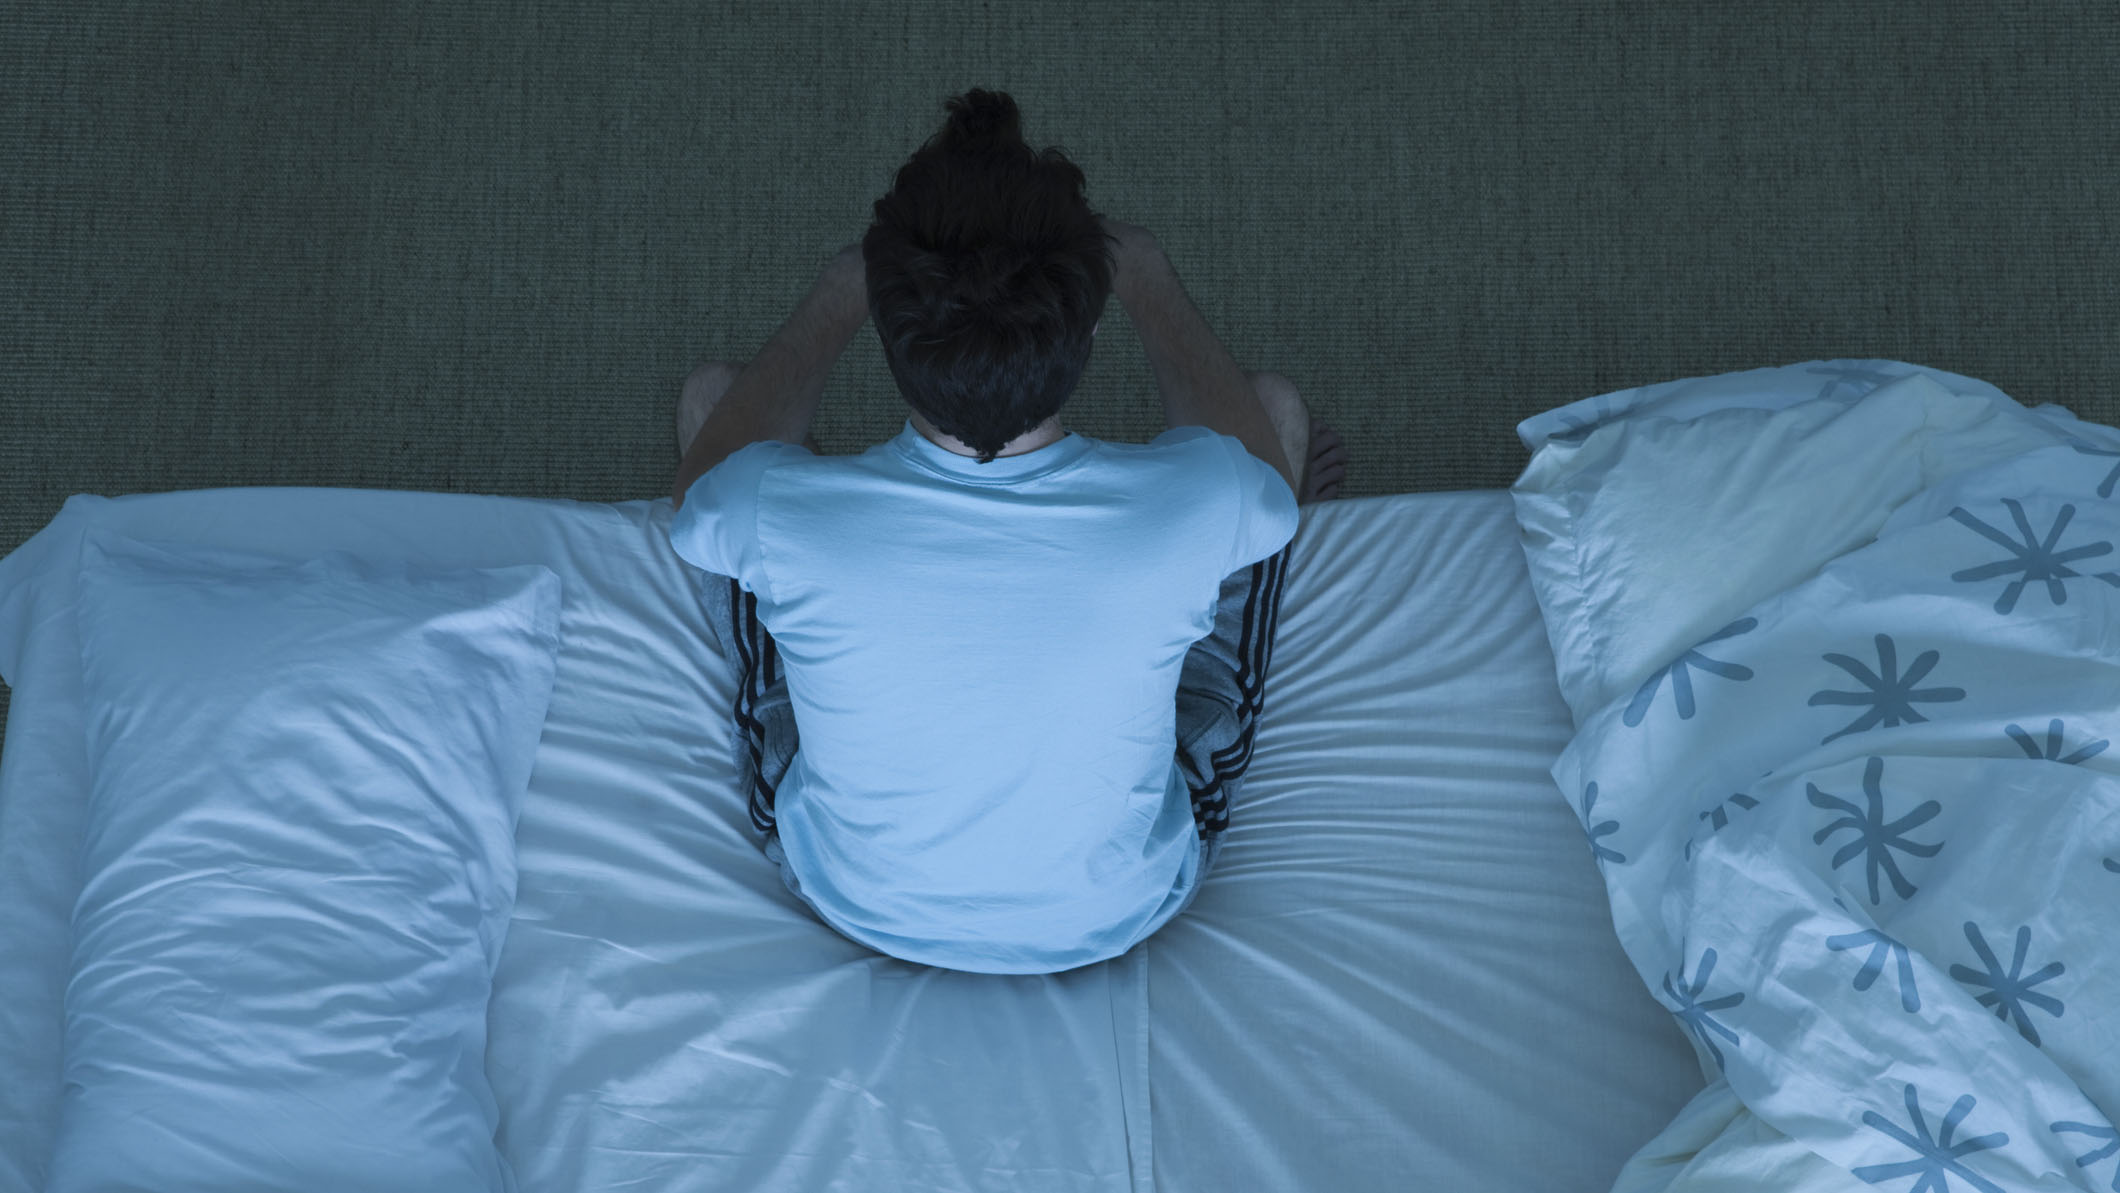 Bir adam yatağının kenarında oturuyor çünkü sadece bir yatak örtüsü üzerinde uyumaktan rahatsız olduğu için uyuyamıyor